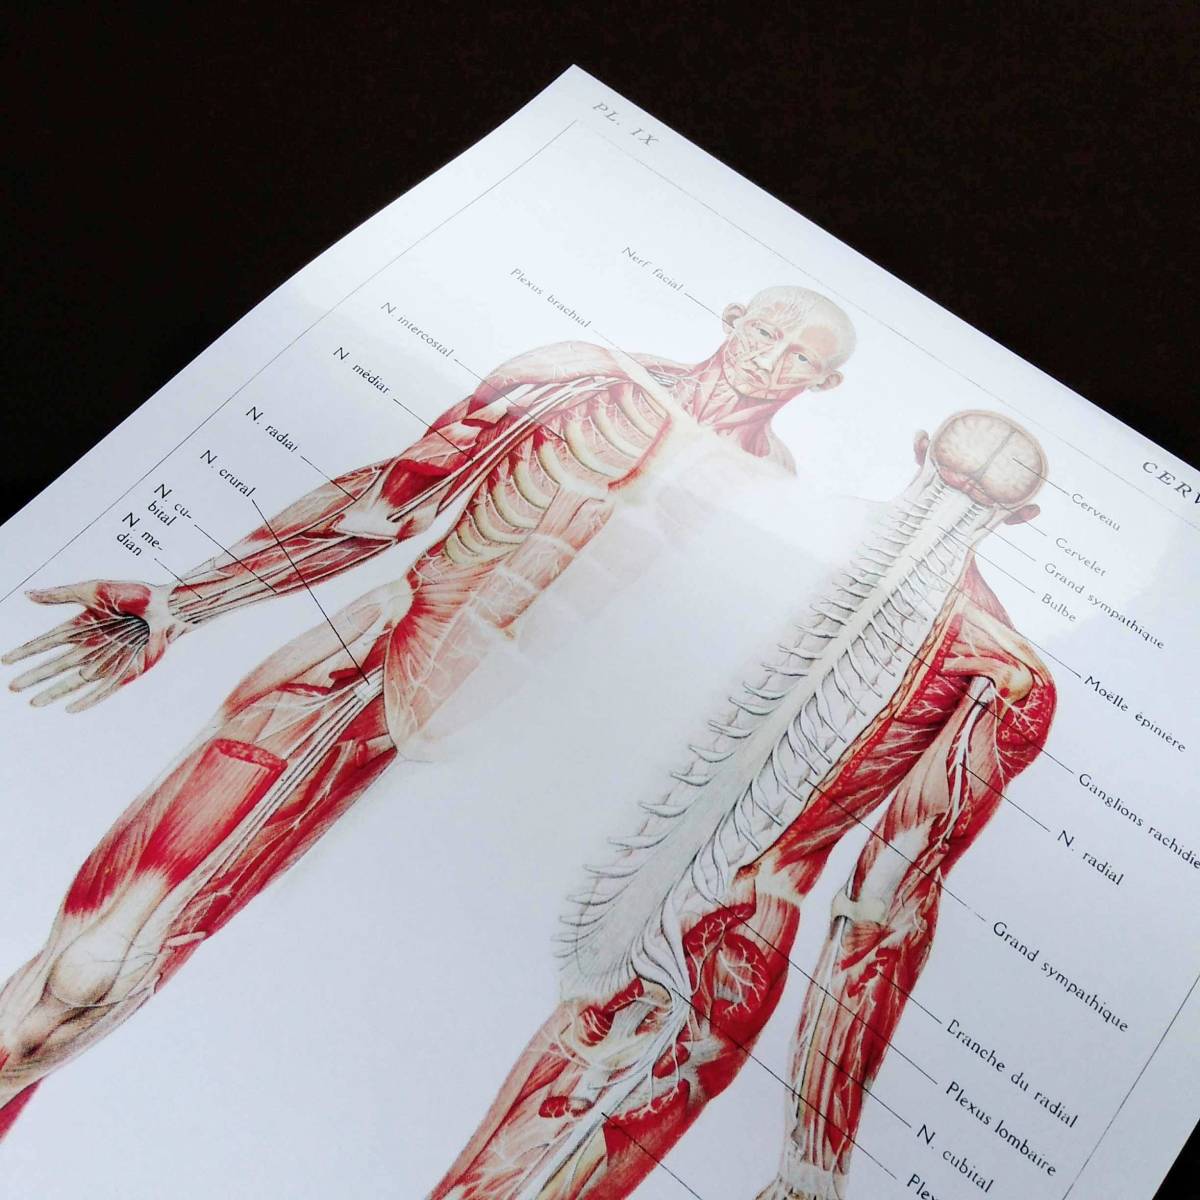 人体構造 脳、骨髄、脊髄と神経の図解 イラスト アート 光沢 ポスター A3 バー カフェ クラシック インテリア 図鑑 医学 解剖学 筋肉 人間 _画像2